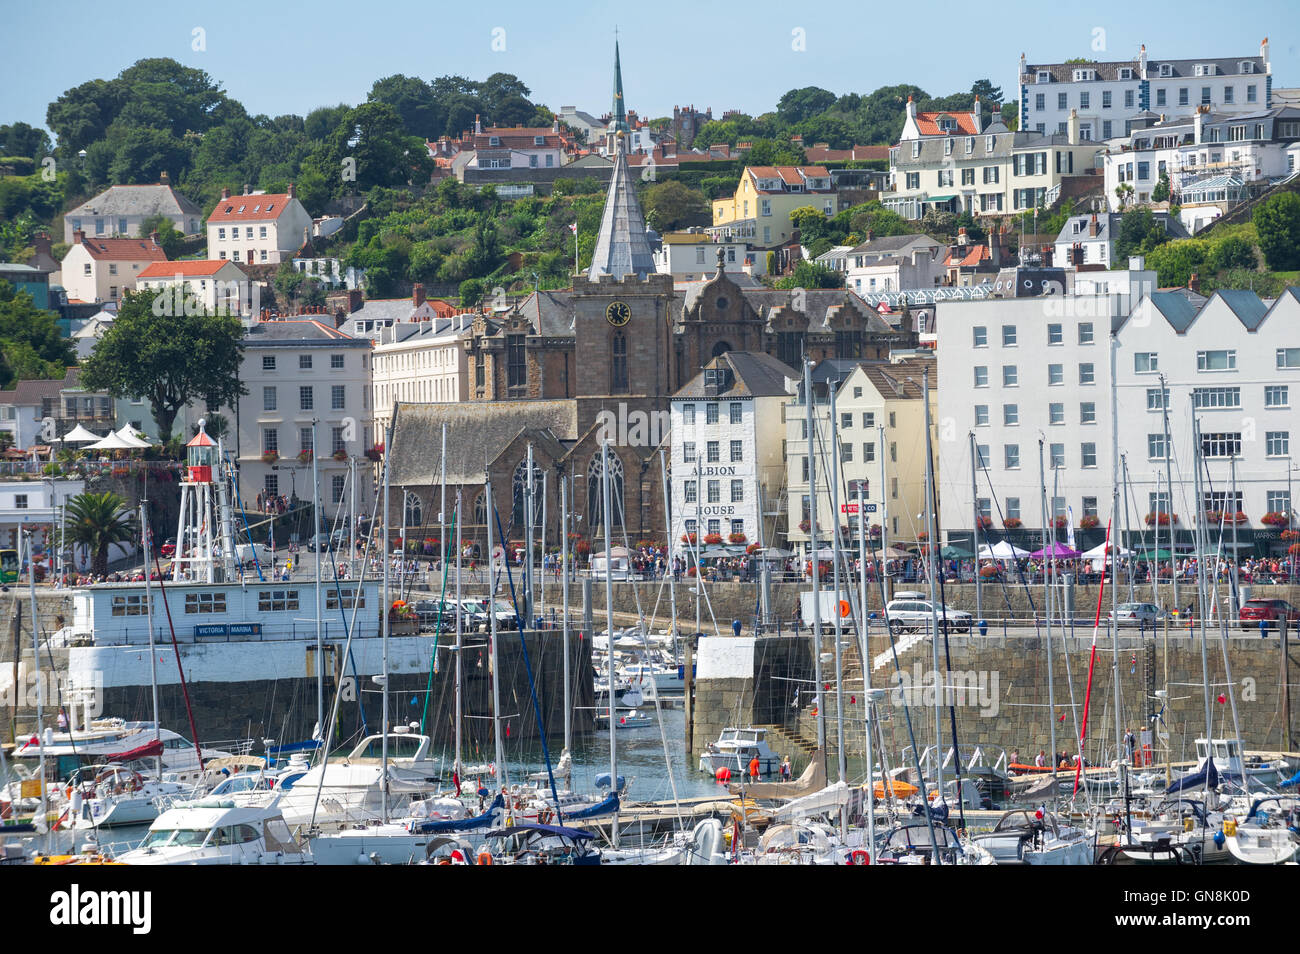 Festgemachten Jachten und Boote in Saint Peter Port Guernsey. Stockfoto